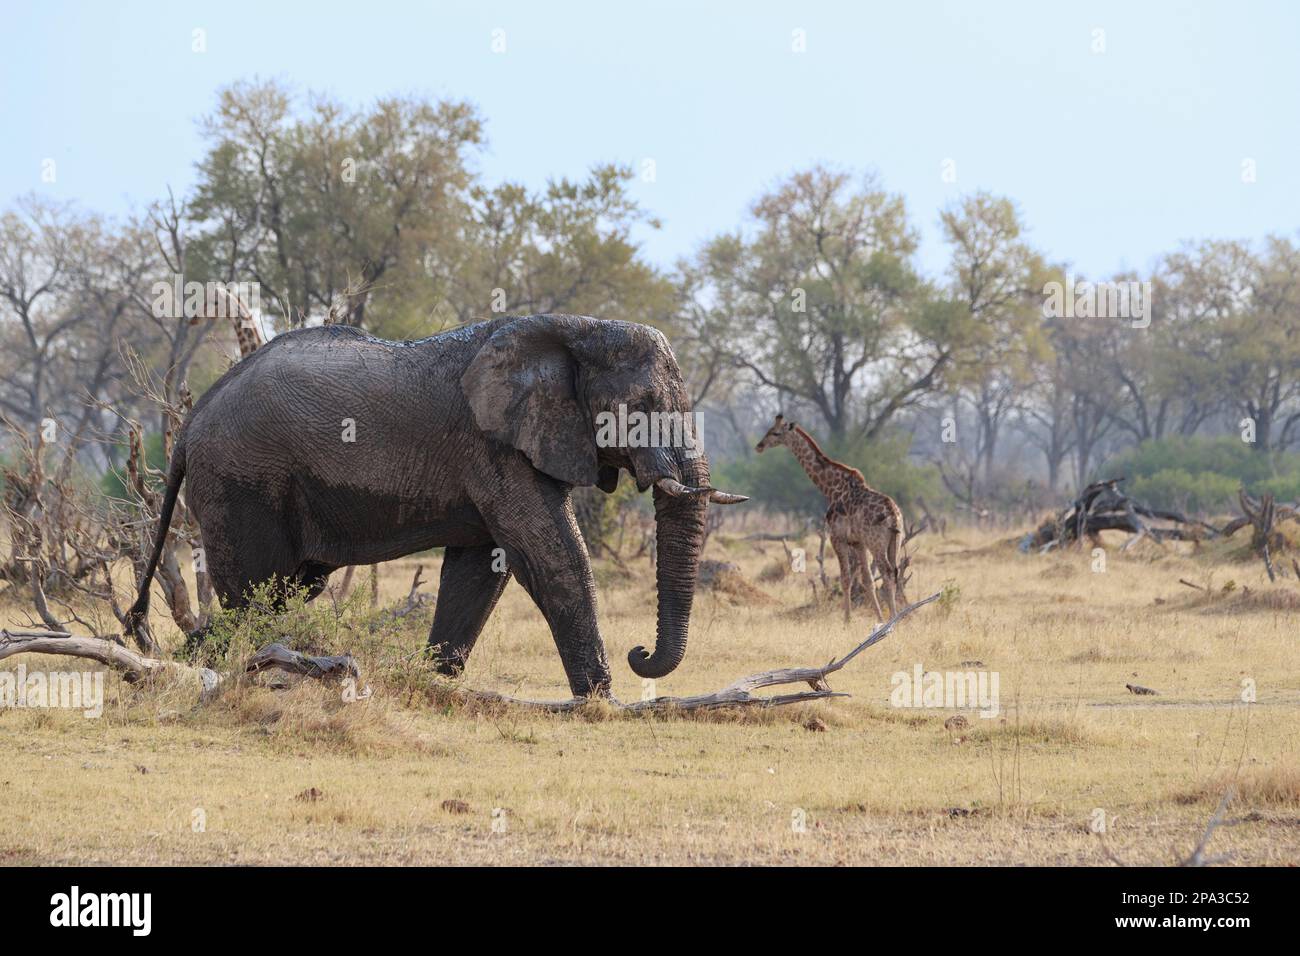 Elefant, Loxodonta africana, Kreuzung von links nach rechts. Hinter wilden Tieren befindet sich afrikanisches Buschland. Okavango Delta, Botsuana, Afrika Stockfoto